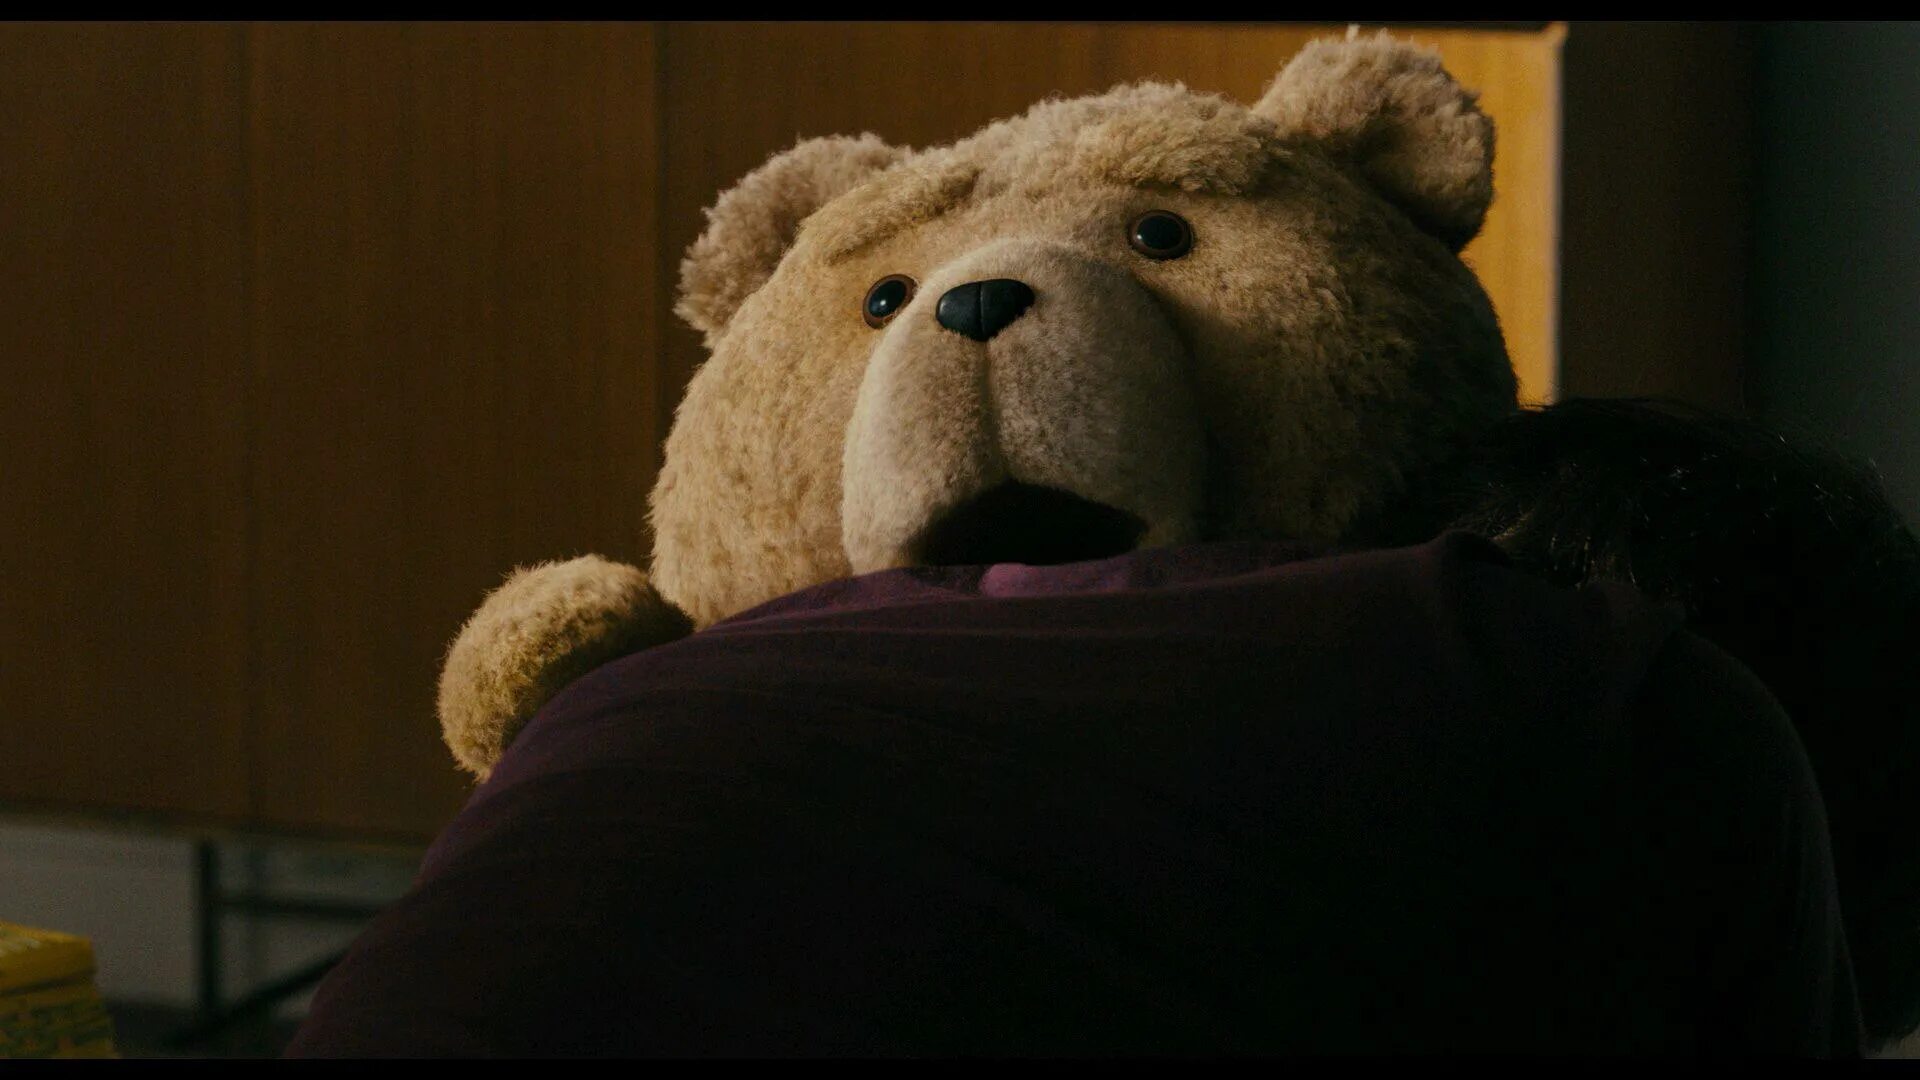 Третий лишний 8. Тед 2012. Третий лишний / Ted (2012). Медведь Тед. Мишка Тед третий лишний.